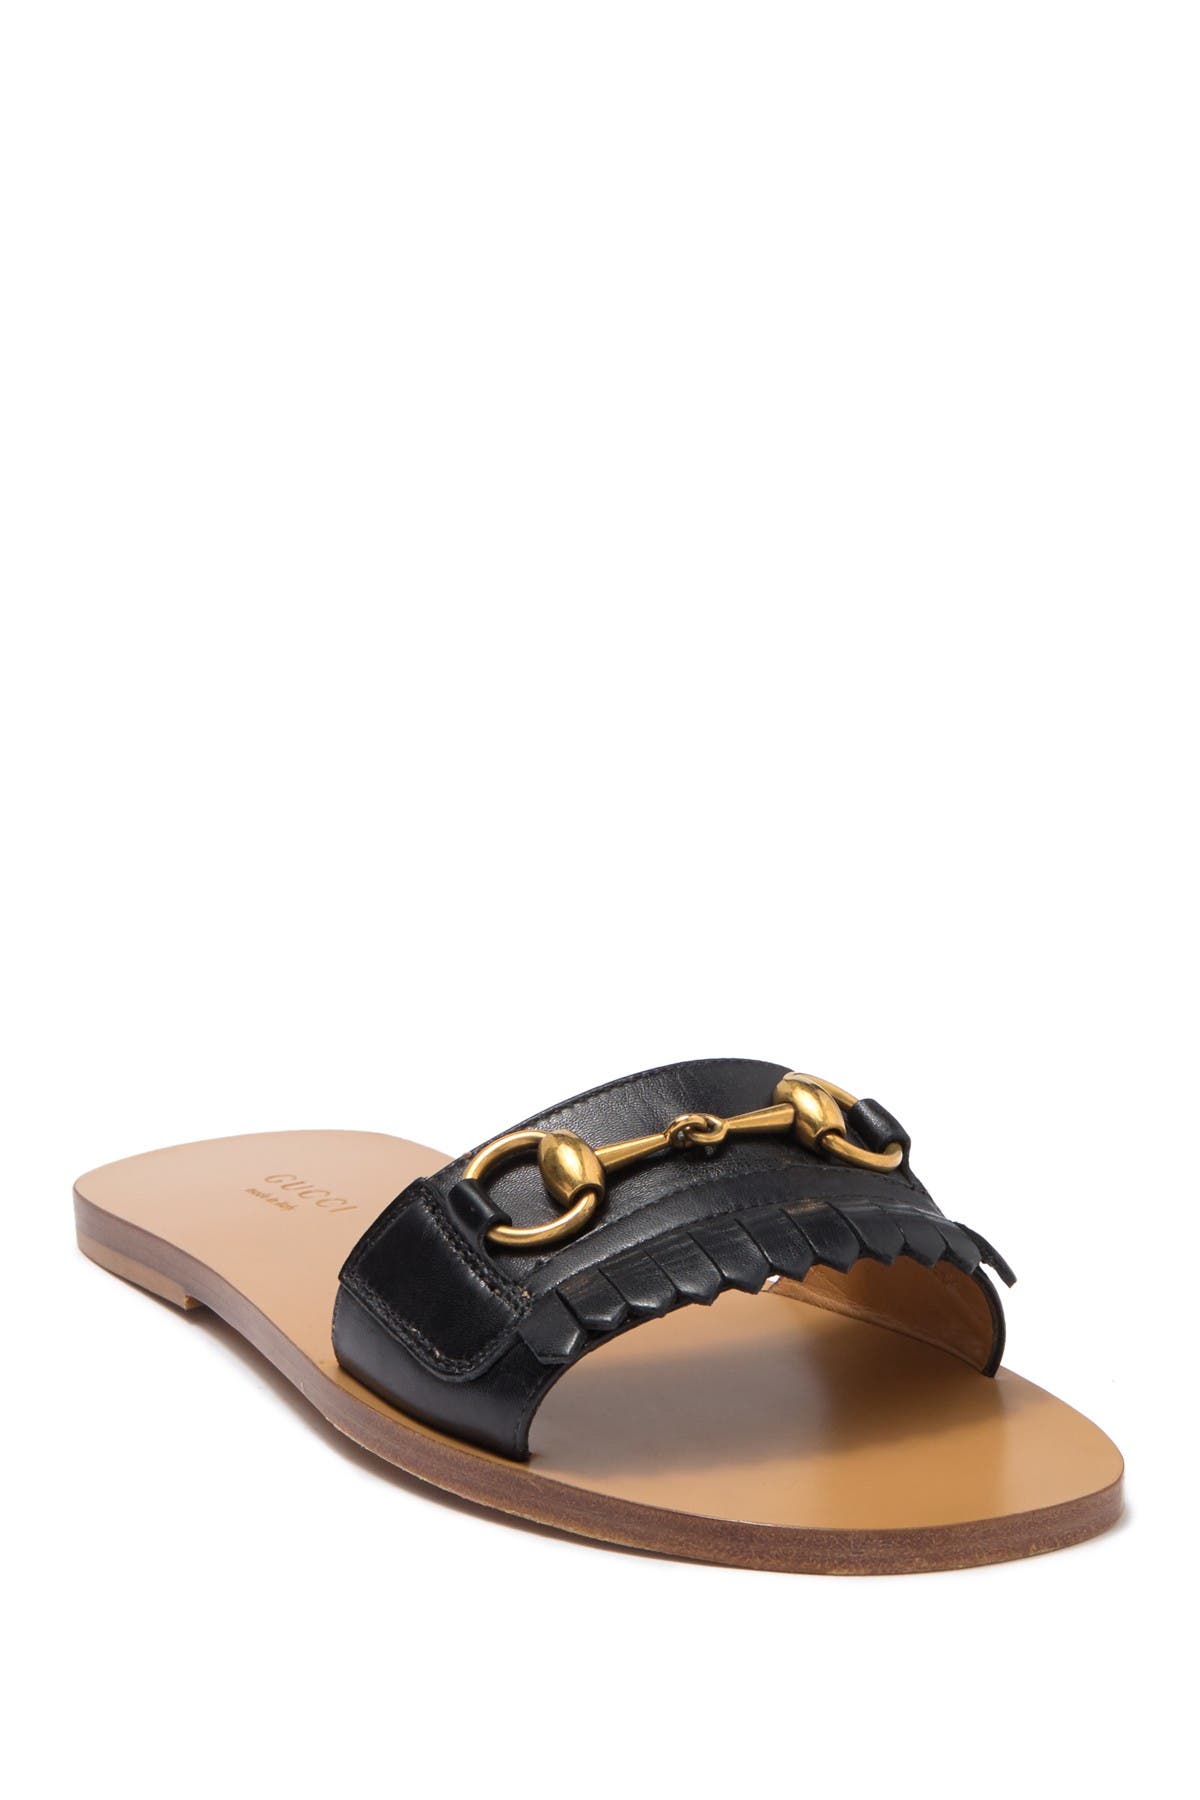 GUCCI | Varadero Leather Slide Sandal 